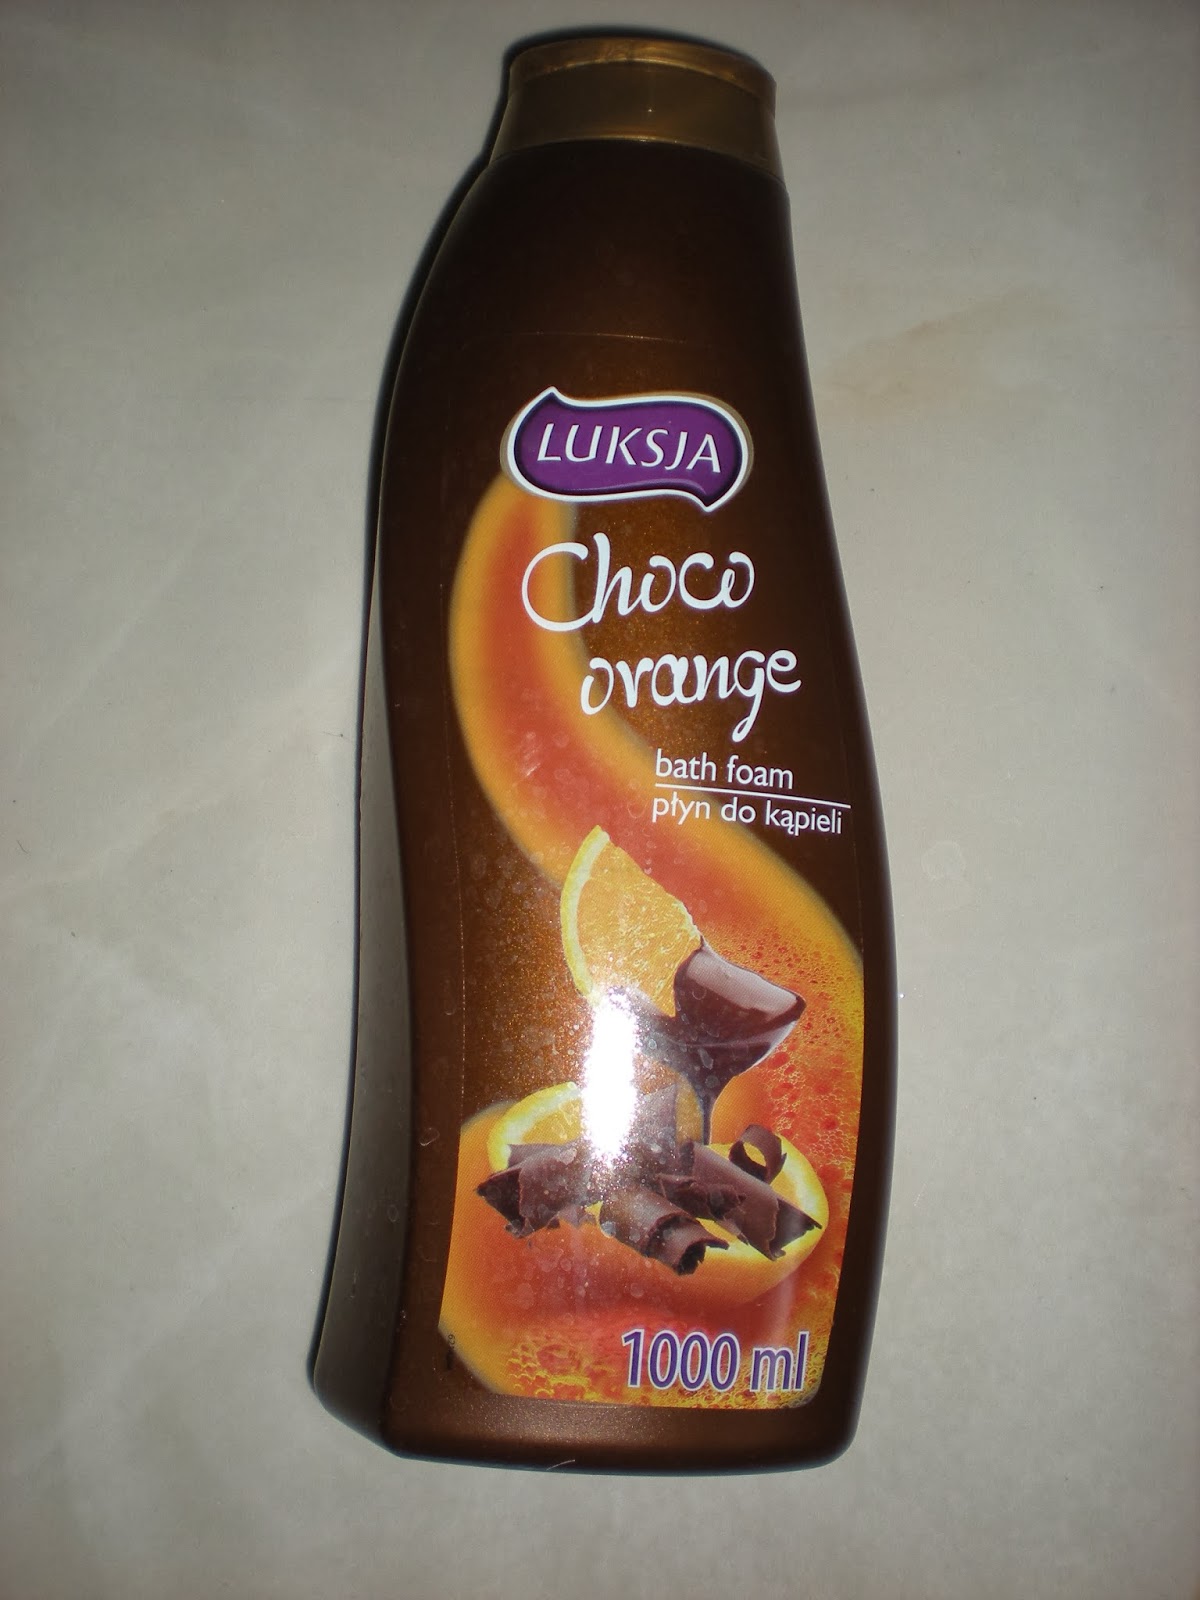 Luksja: Choco Bath Foam - "moje zakupy"